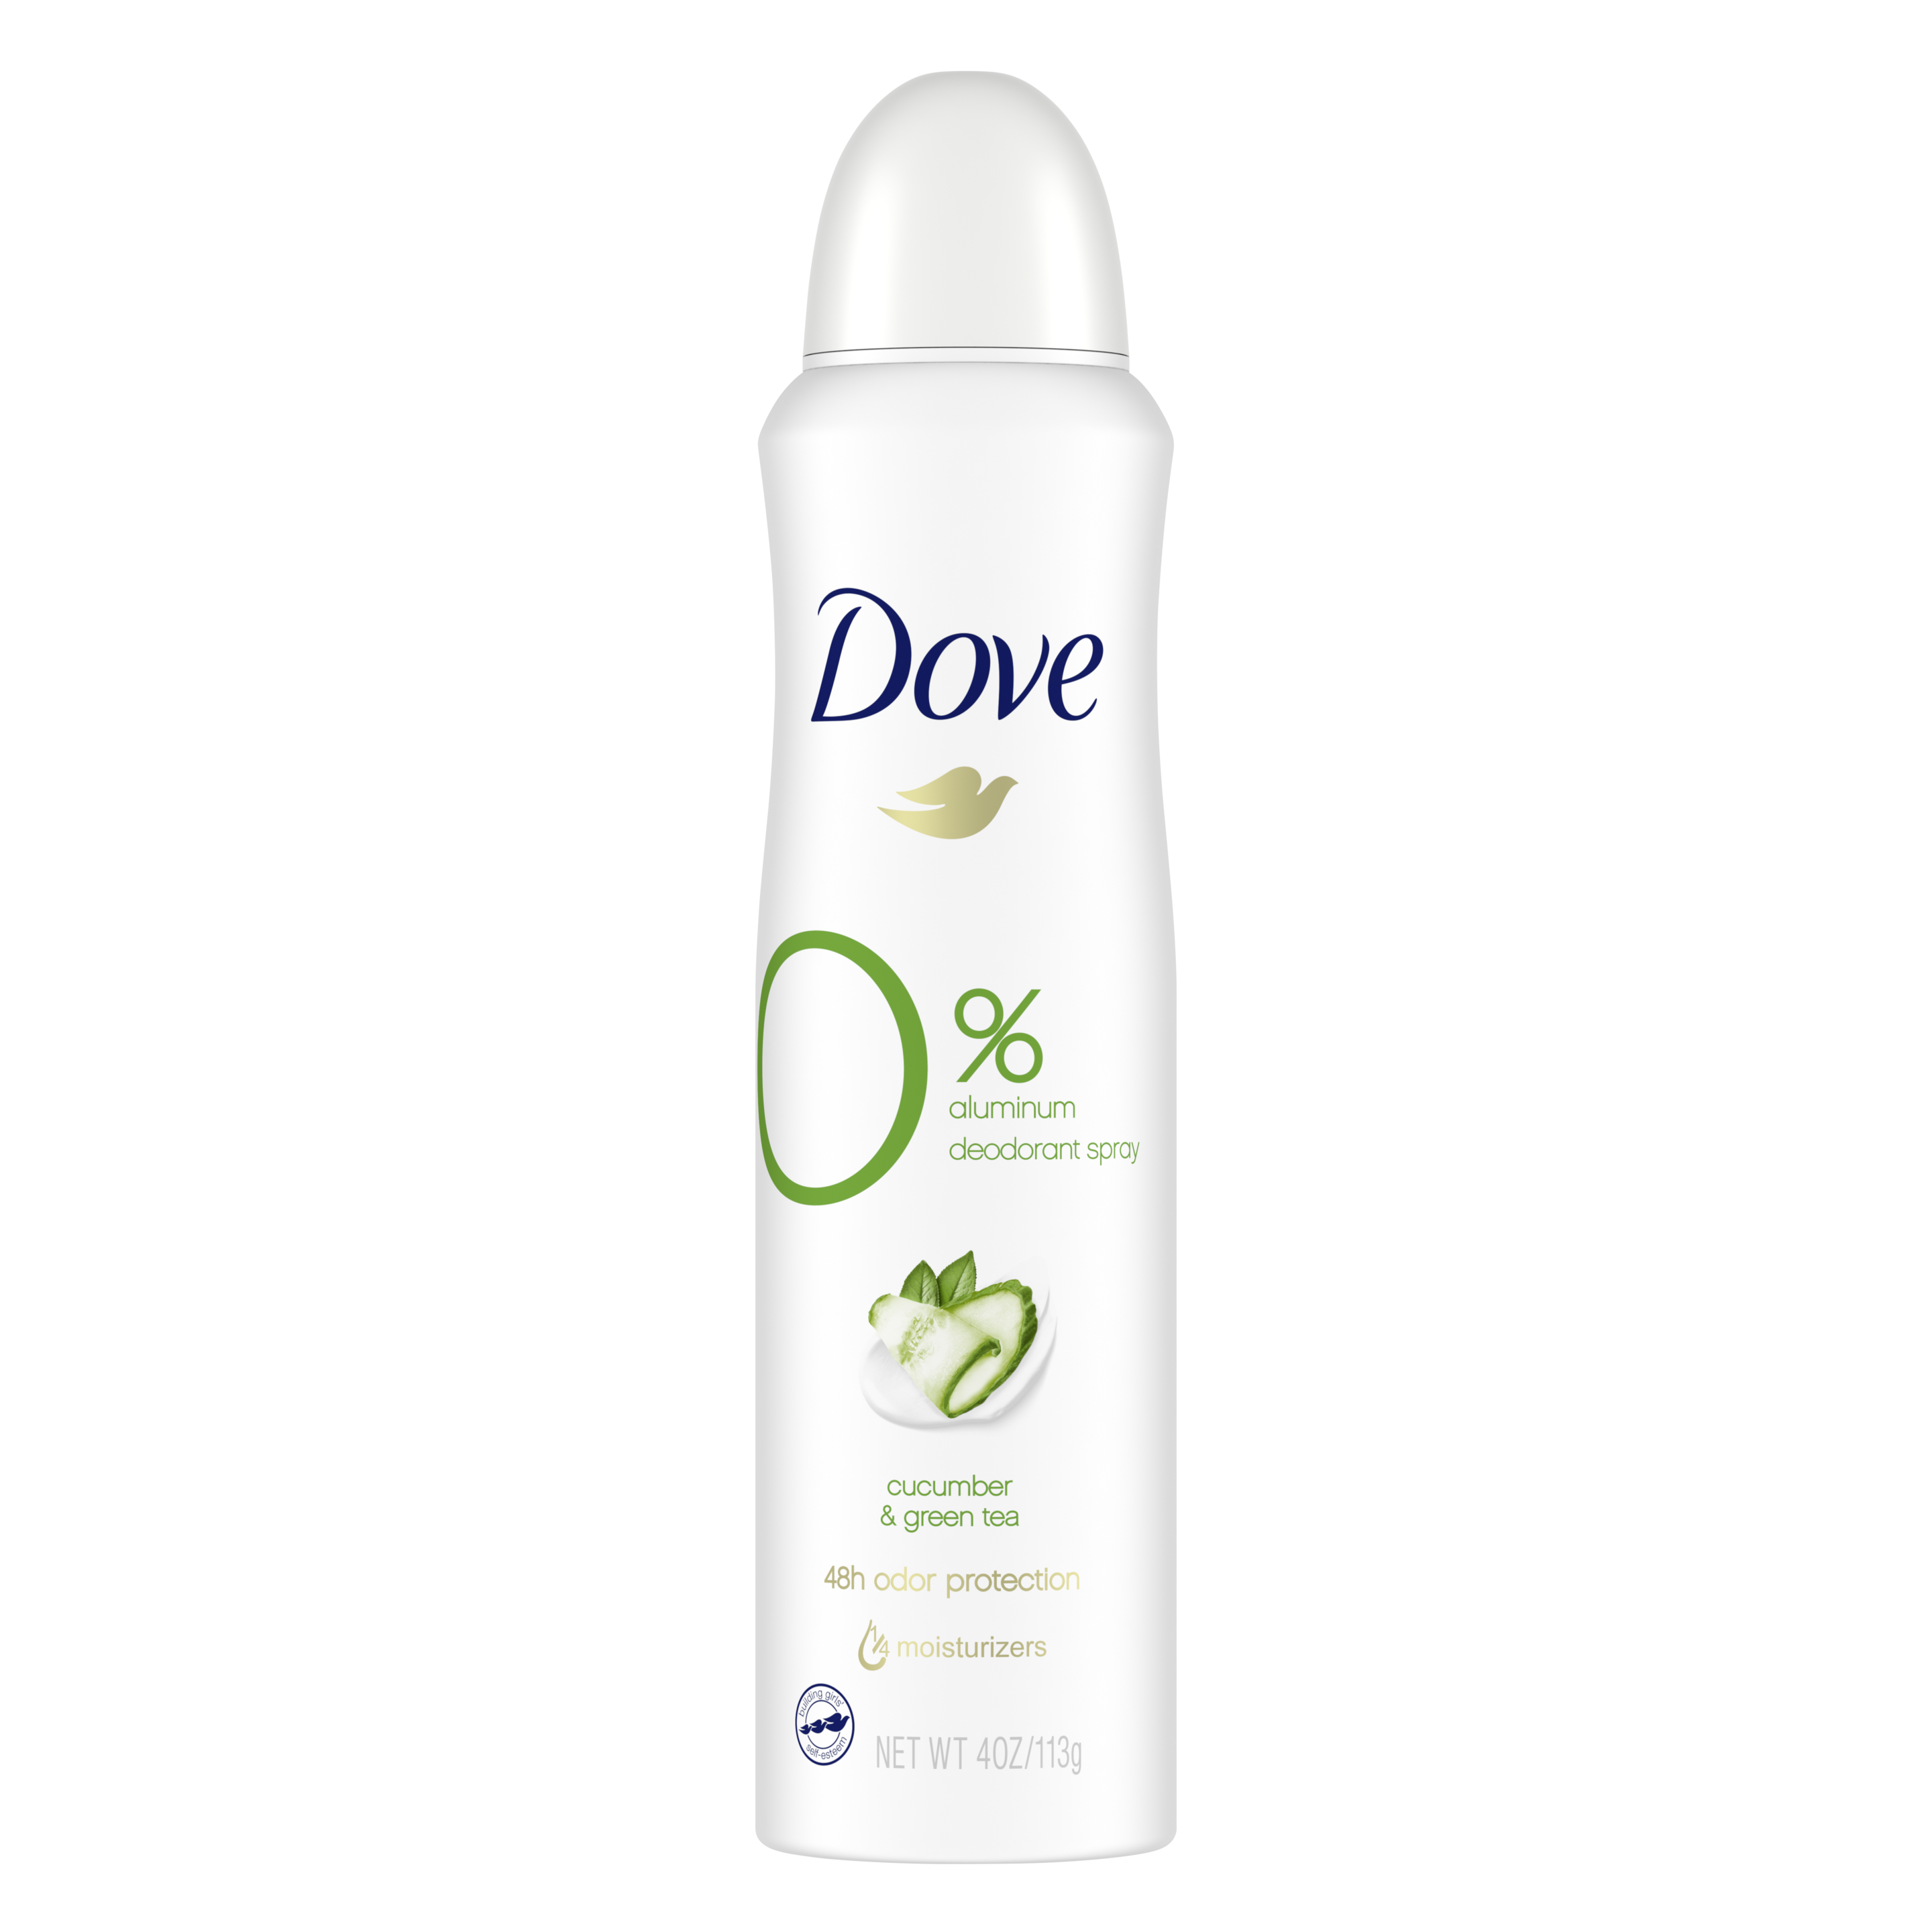 Dove 0% Aluminum Deodorant Stick Cucumber and Green Tea | Dove